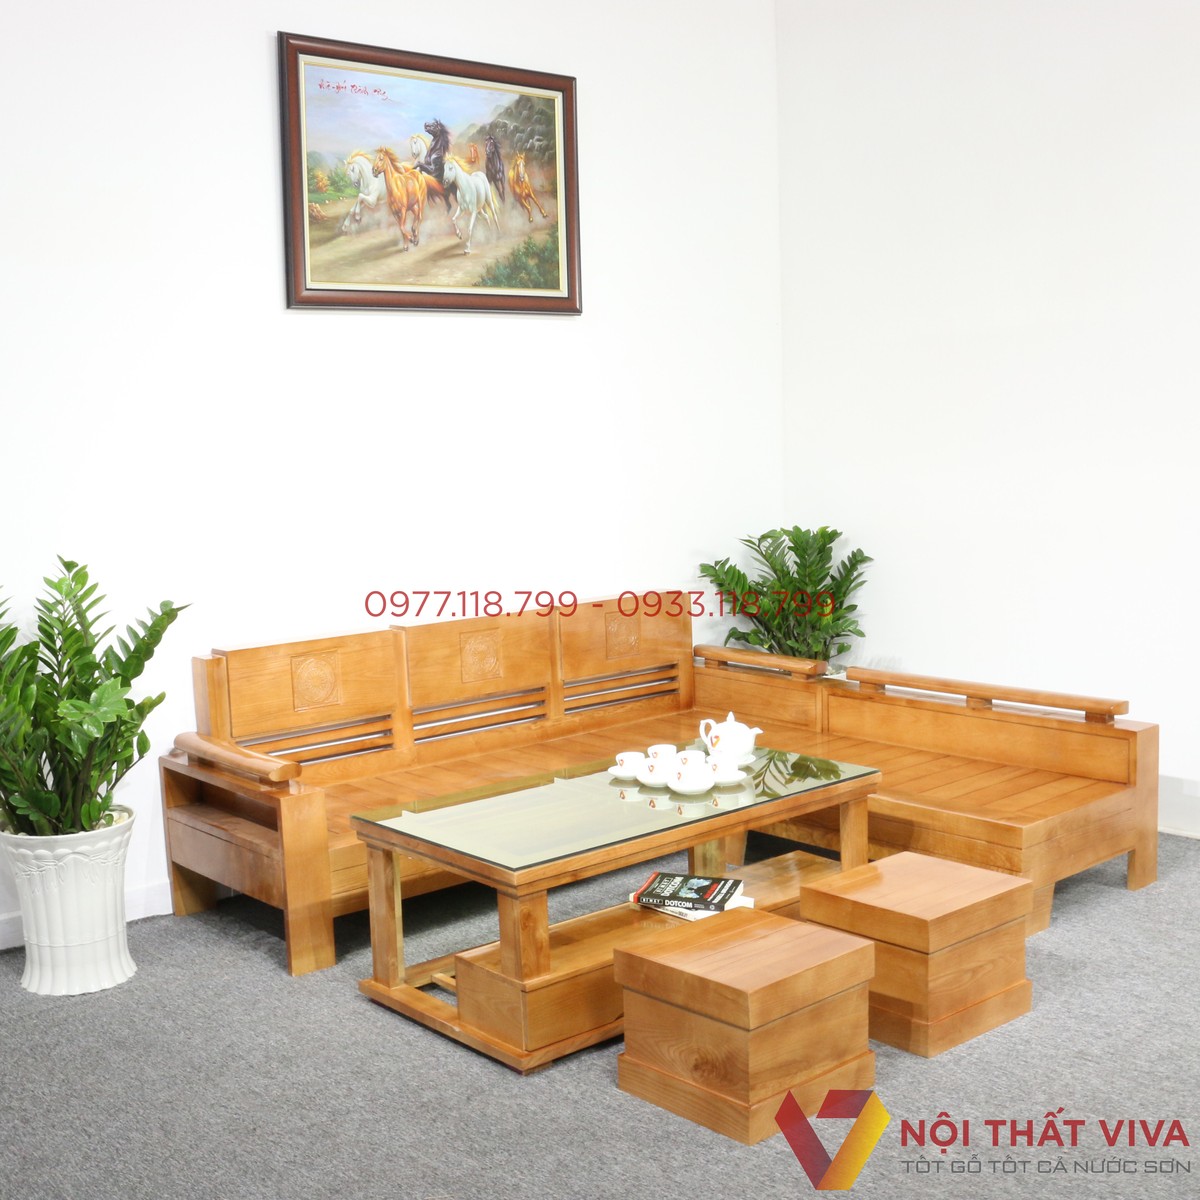 Ghế Sofa Gỗ: Ghế sofa gỗ với chất liệu và độ bền đẹp là một lựa chọn tuyệt vời để tôn lên vẻ tự nhiên, tinh tế cho ngôi nhà của bạn. Hãy xem qua hình ảnh này và bắt đầu đắm mình trong những mẫu ghế sofa gỗ mộc mạc, thanh lịch và tinh tế.